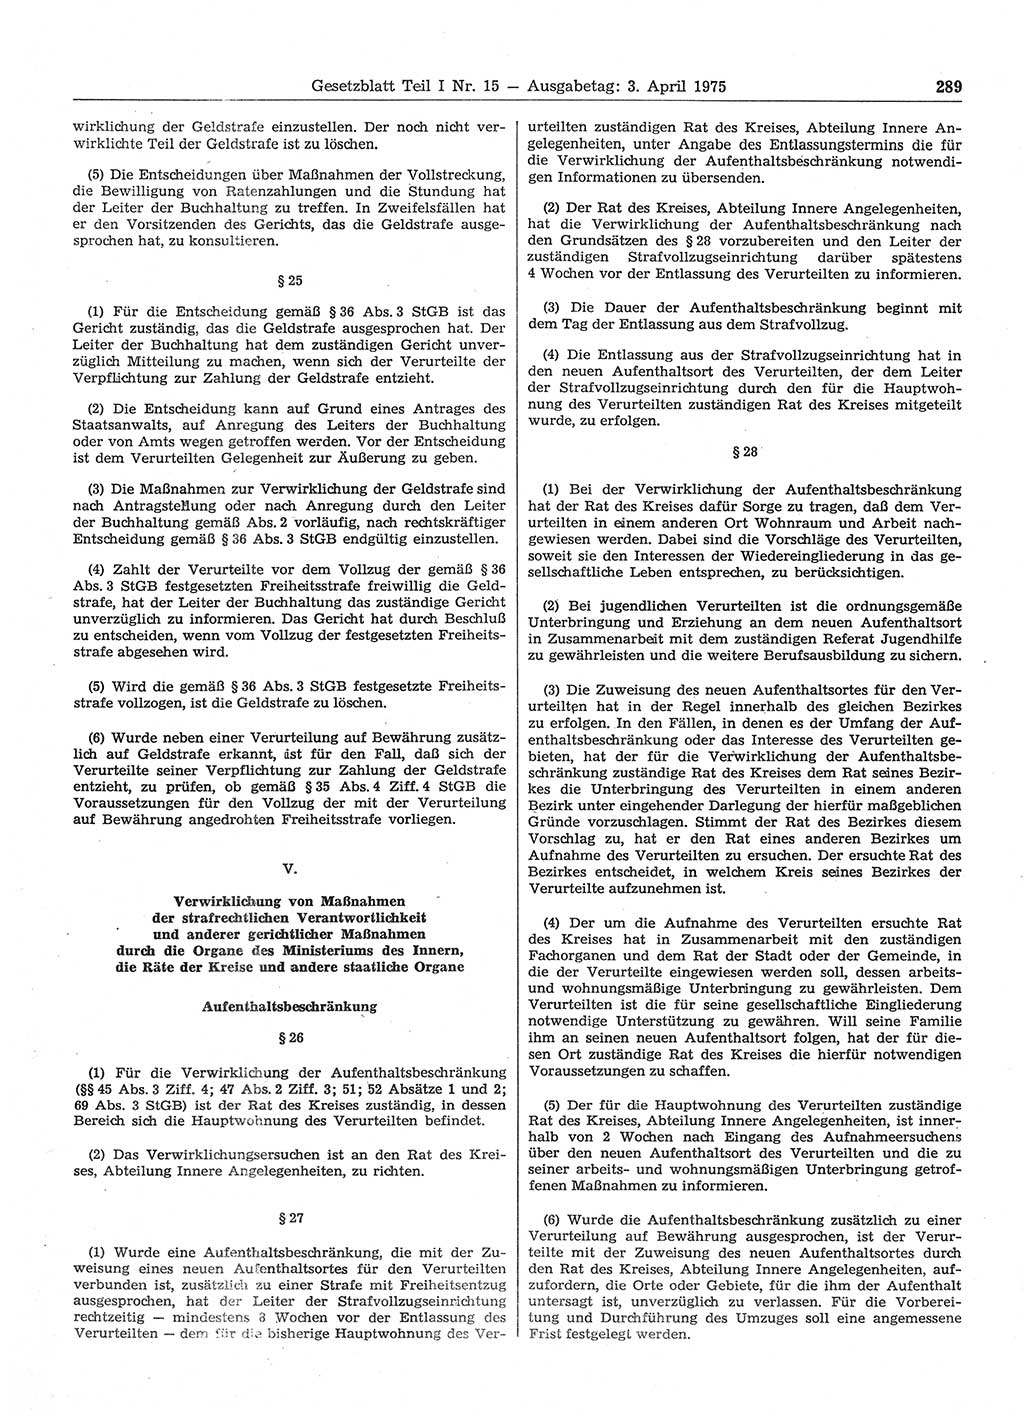 Gesetzblatt (GBl.) der Deutschen Demokratischen Republik (DDR) Teil Ⅰ 1975, Seite 289 (GBl. DDR Ⅰ 1975, S. 289)